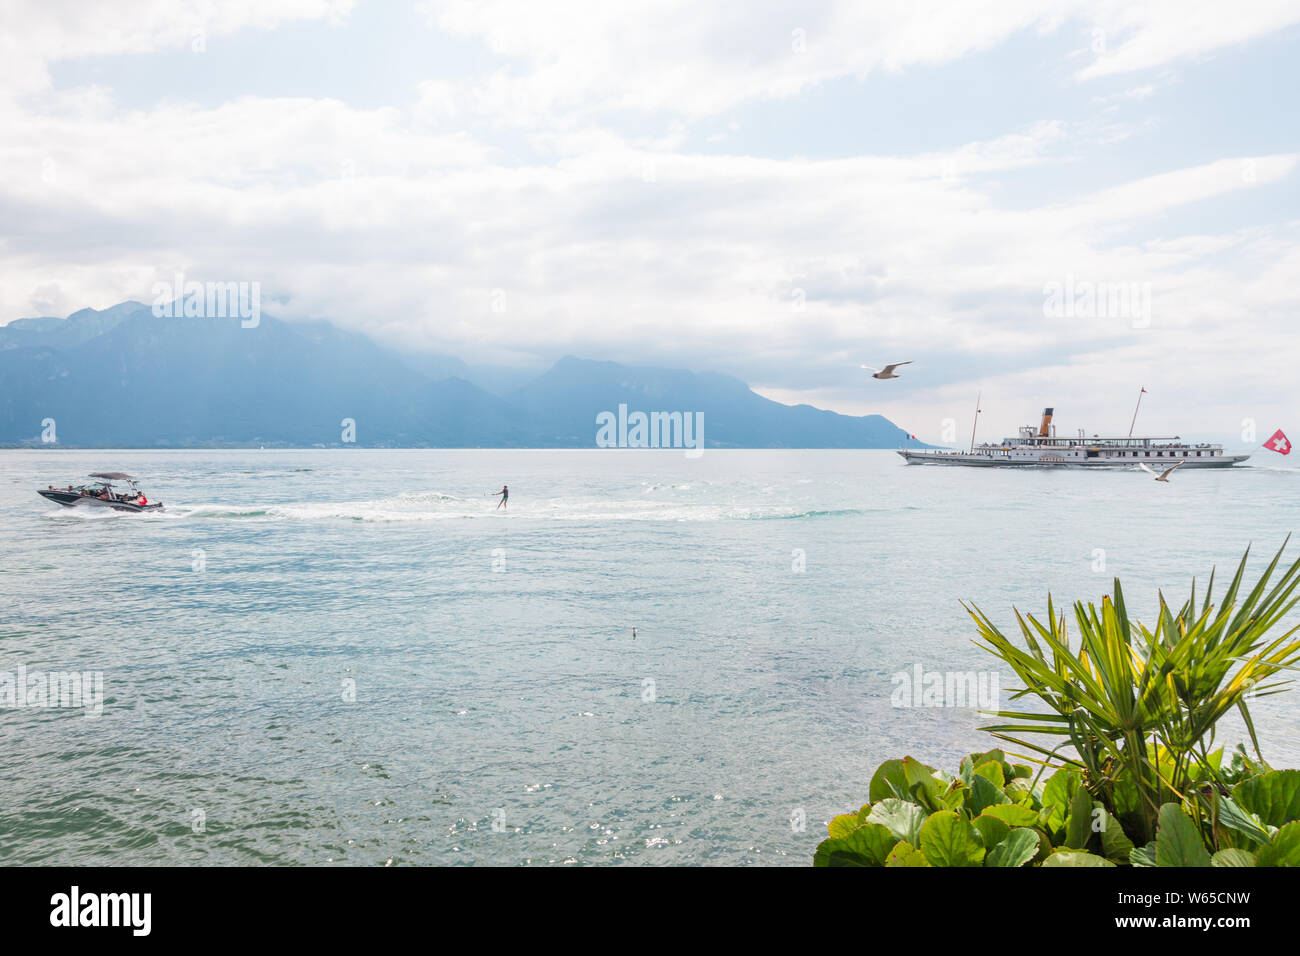 La diversión en verano actividades de esquí acuático y steamboat crucero sobre el lago Leman en Suiza Riviera Montreux, Vaud, Suiza durante el caluroso verano Foto de stock